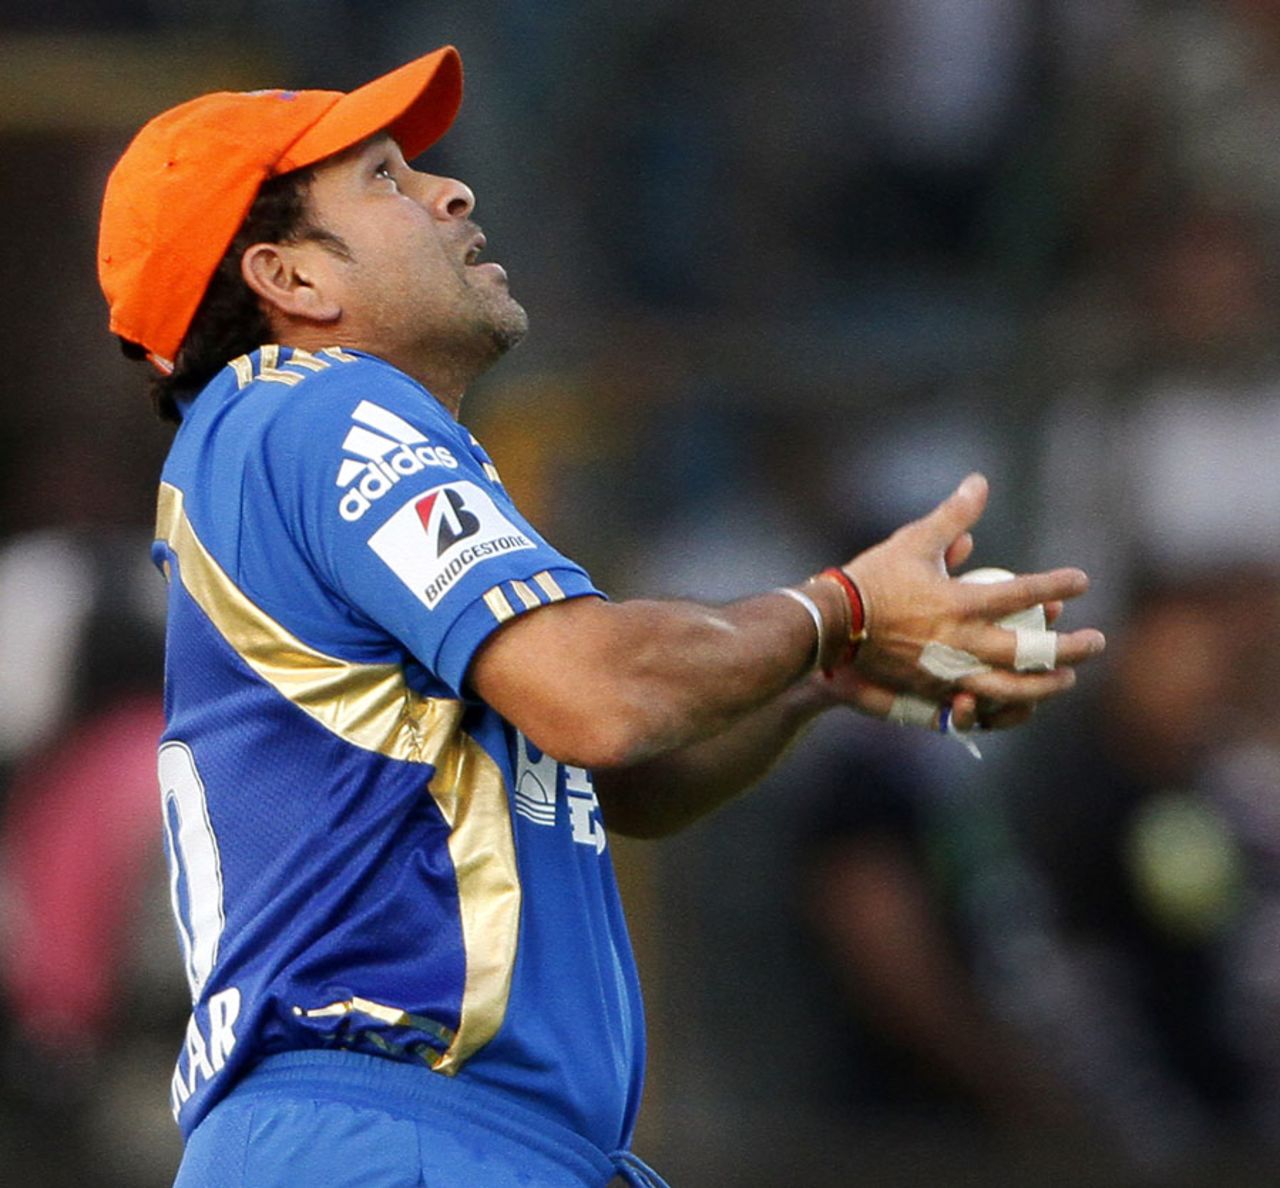 Sachin Tendulkar takes a catch to dismiss Rahul Dravid, Rajasthan Royals v Mumbai Indians, IPL 2011, Jaipur, April 29, 2011